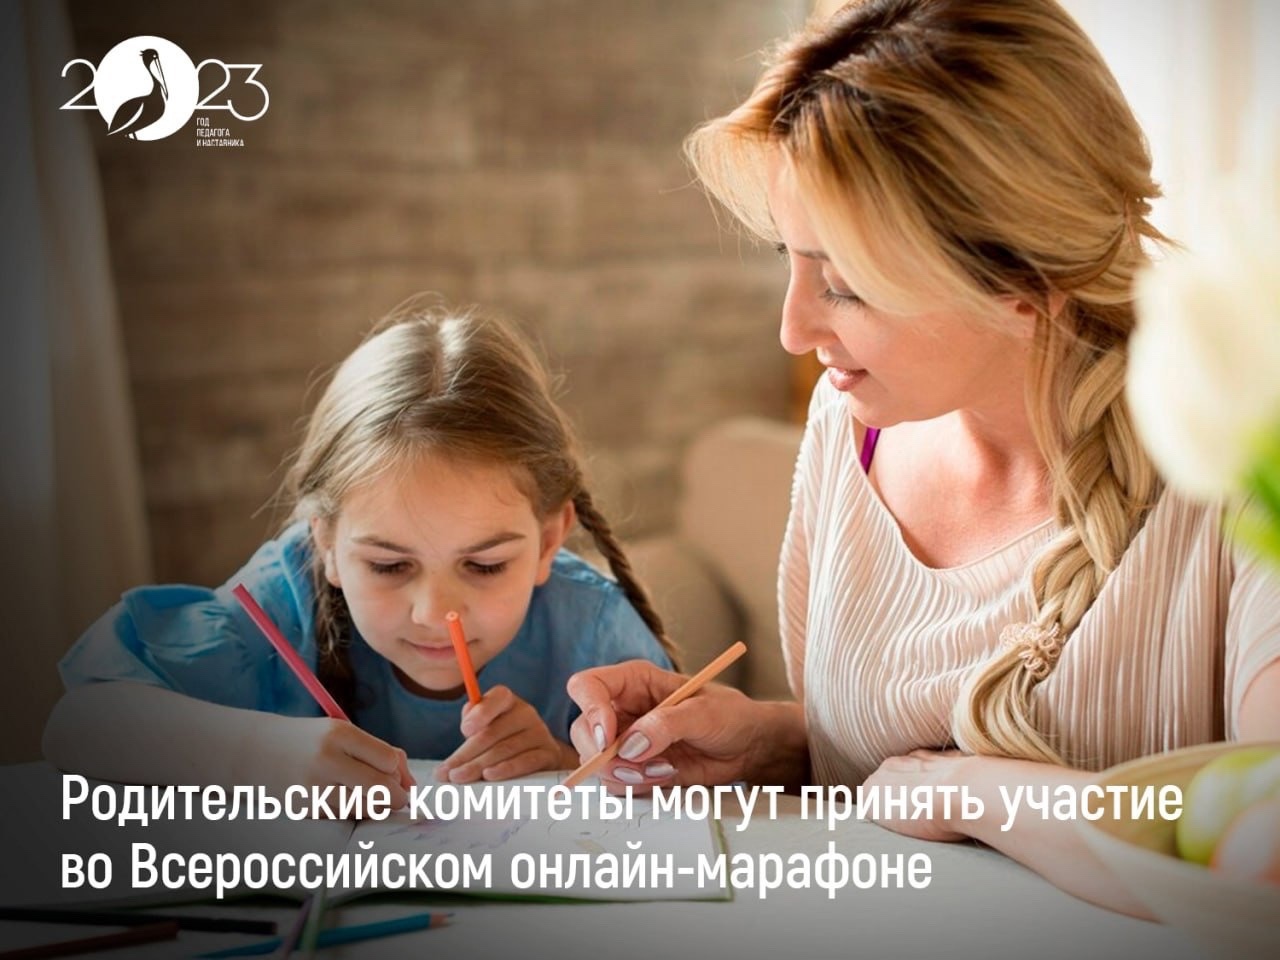 Всероссийский онлайн-марафон для родительских комитетов.